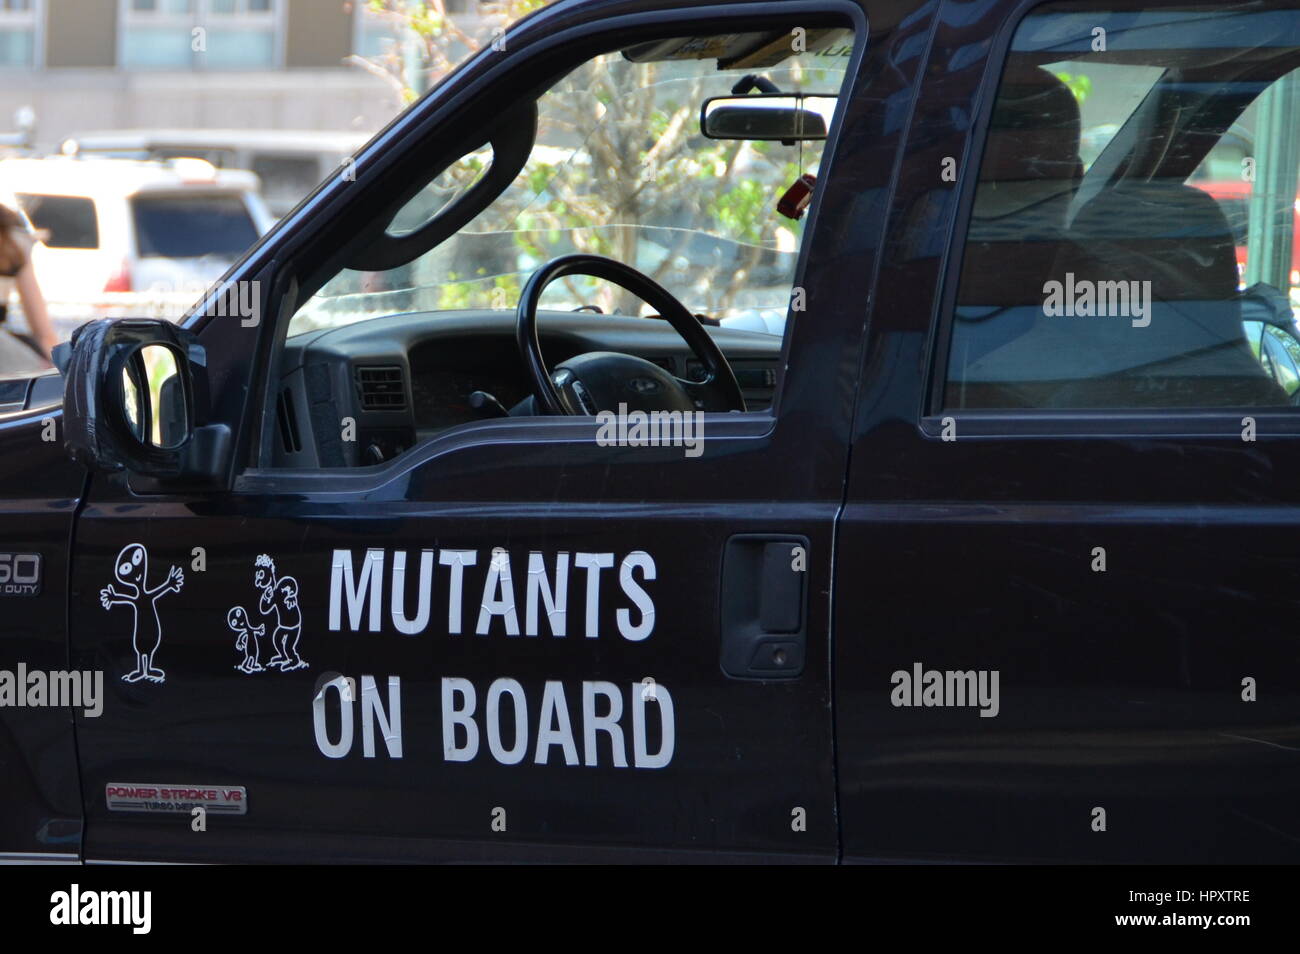 Conseil sur les mutants sign Banque D'Images